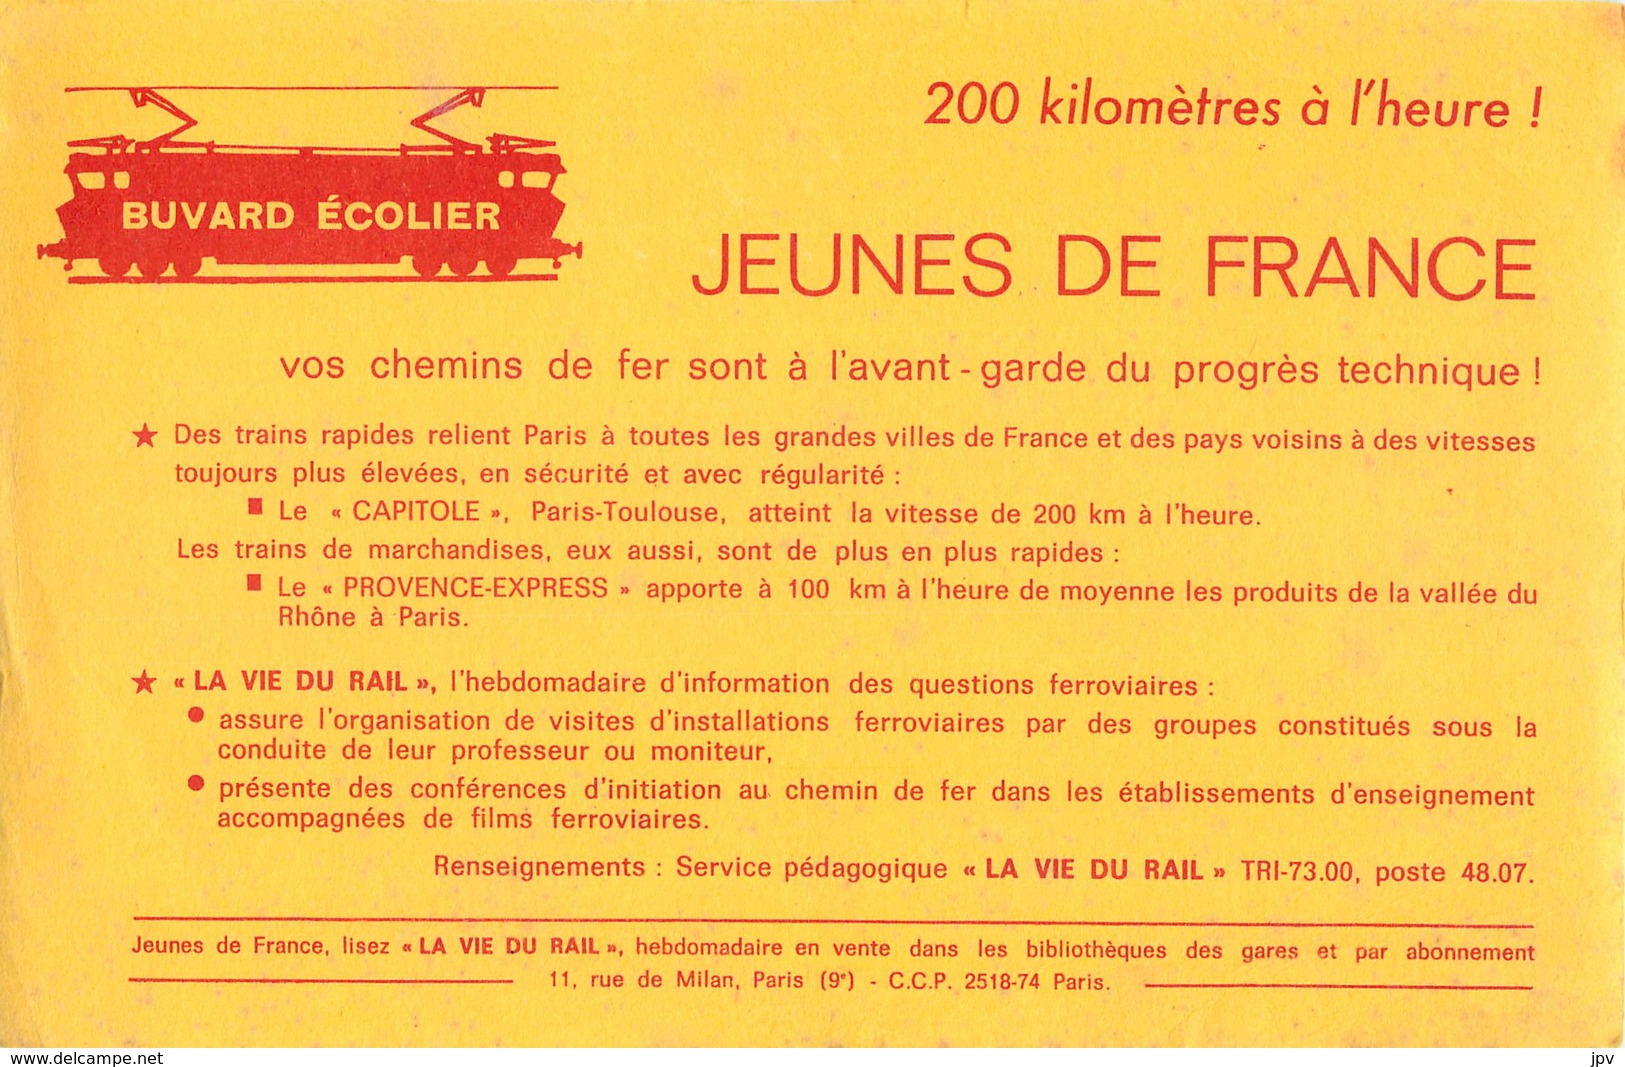 BUVARD ECOLIER - JEUNES DE FRANCE  - LA VIE DU RAIL - LE CAPITOLE - PROVENCE-EXPRESS - Transports